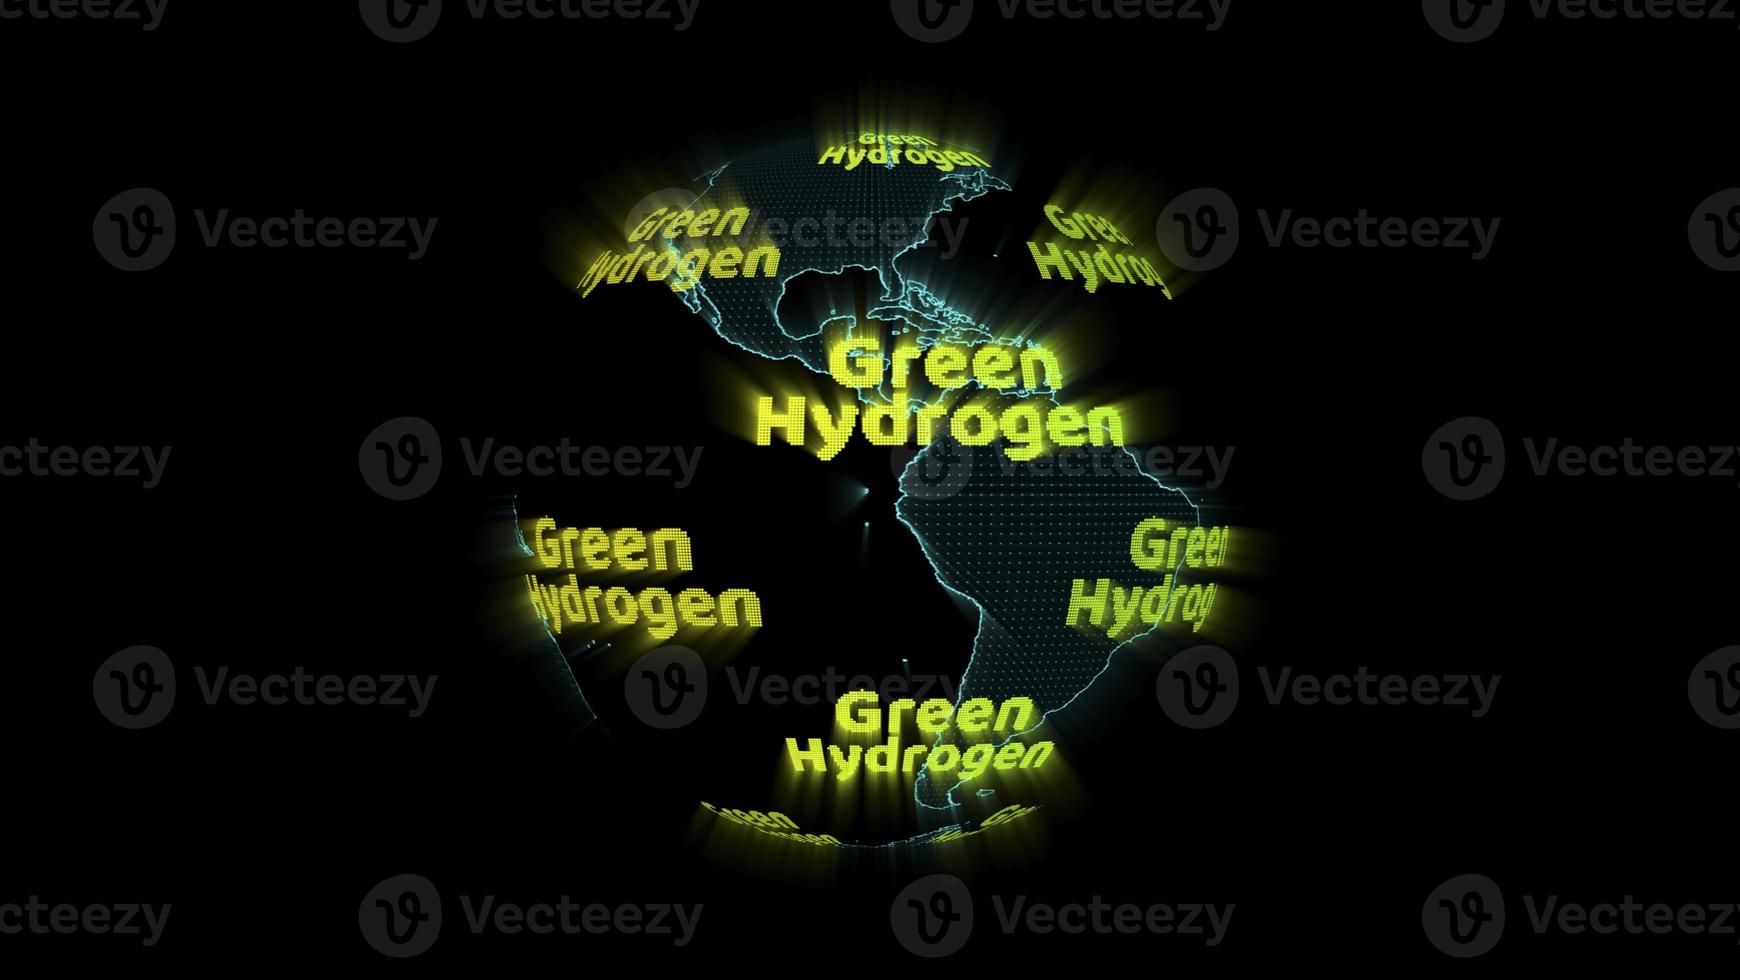 digital världskarta med grön väte grön text roterande, koncept som ett alternativt bränsle som är ren energi foto